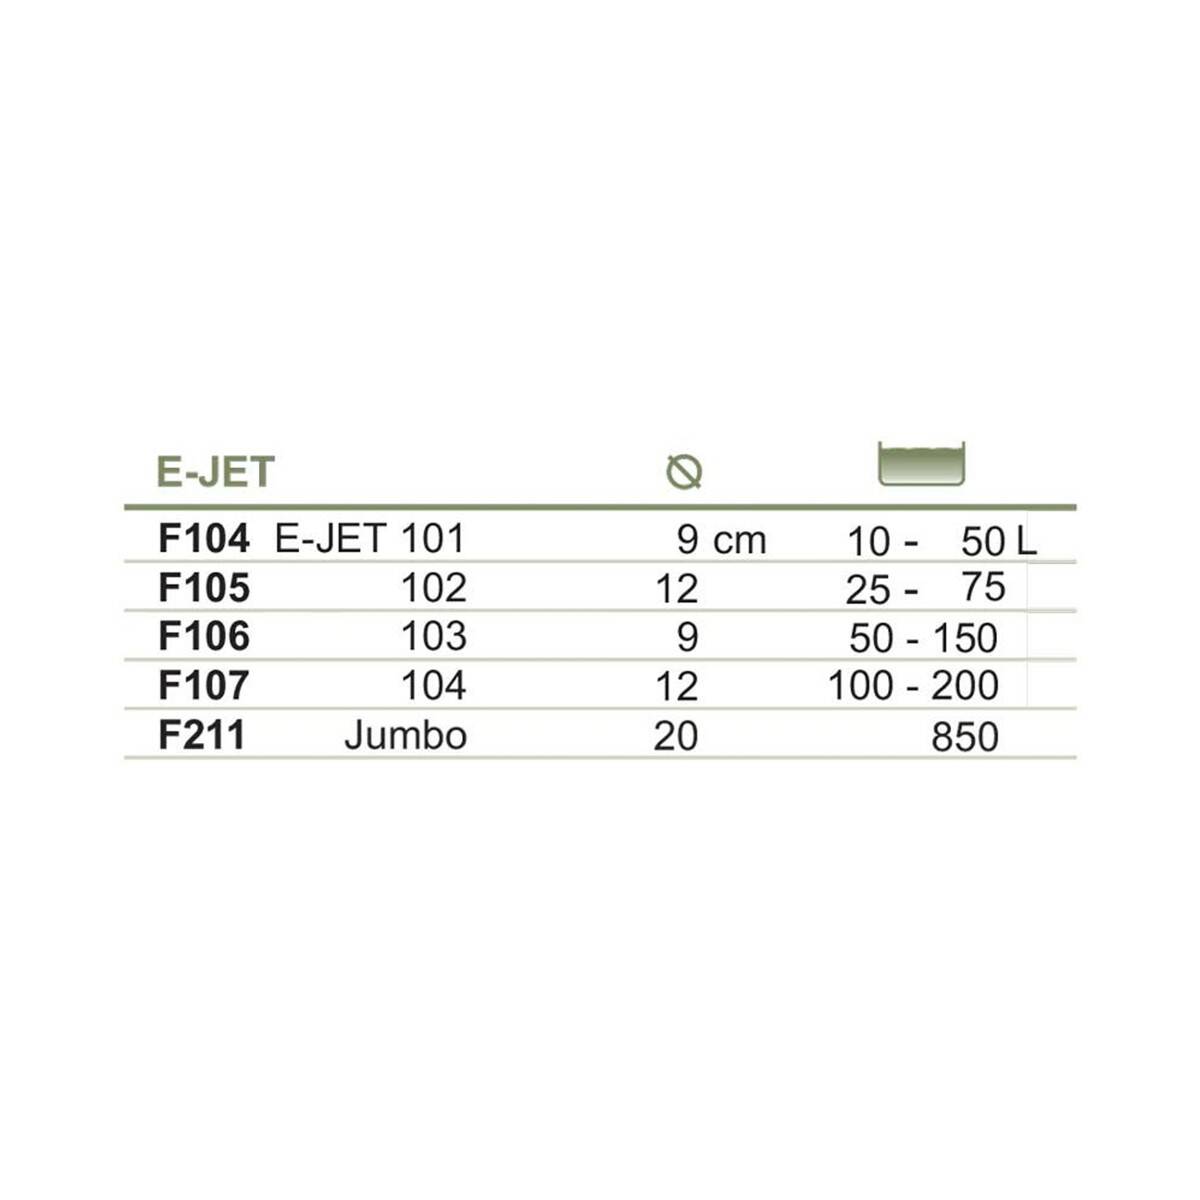 Filtr gąbkowy E-JET 101 Happet do akw. 10-25l (Zdjęcie 5)